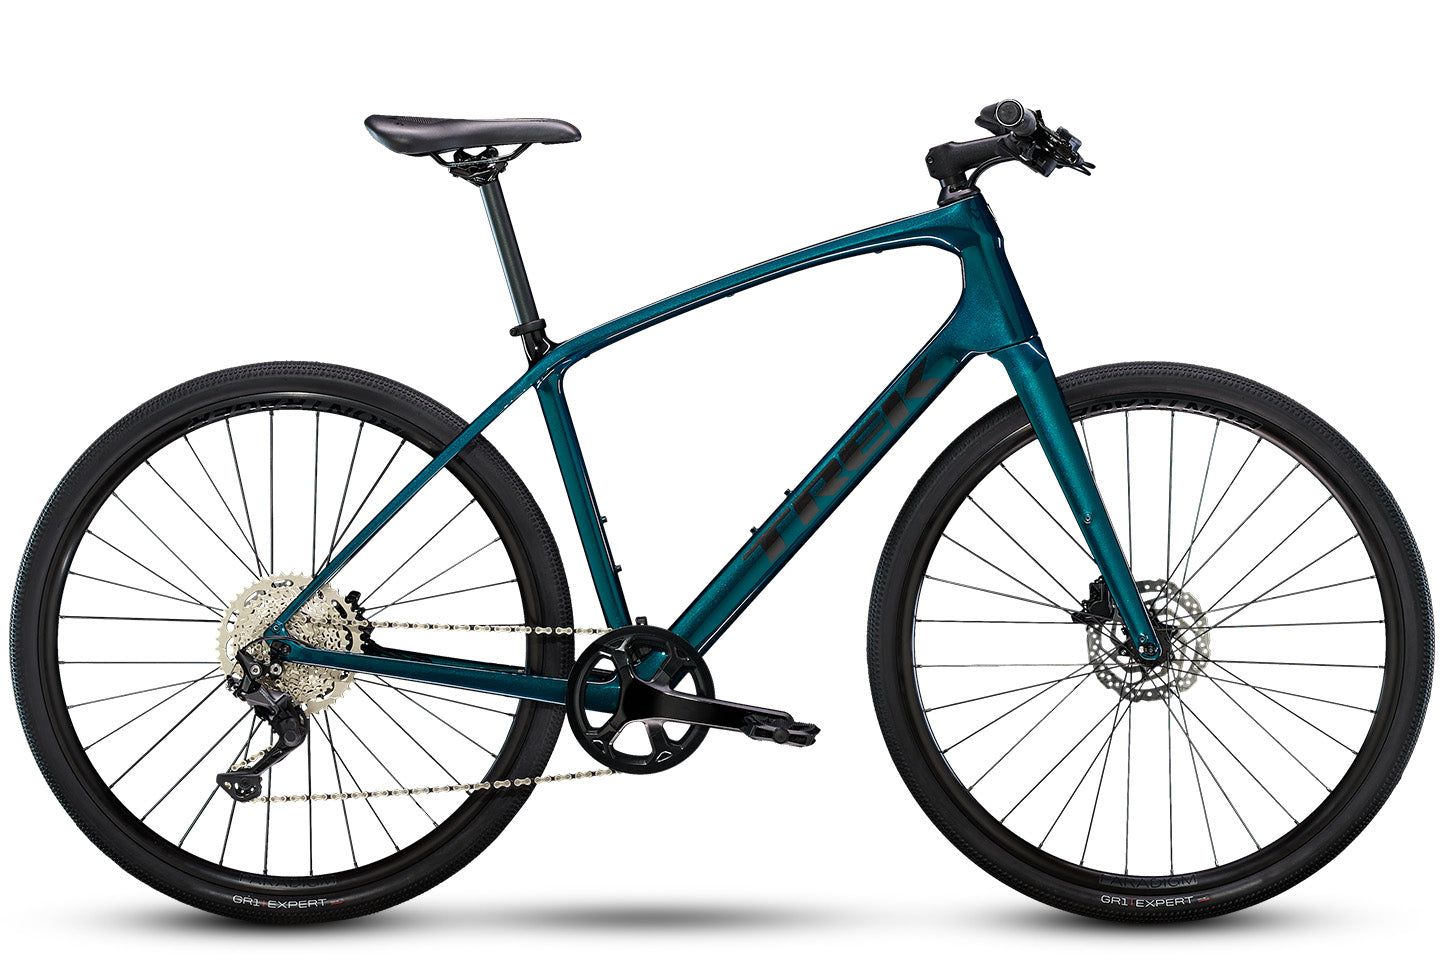 TREK 7.2 FX クロスバイク サイズ20(175~185cm) - 自転車